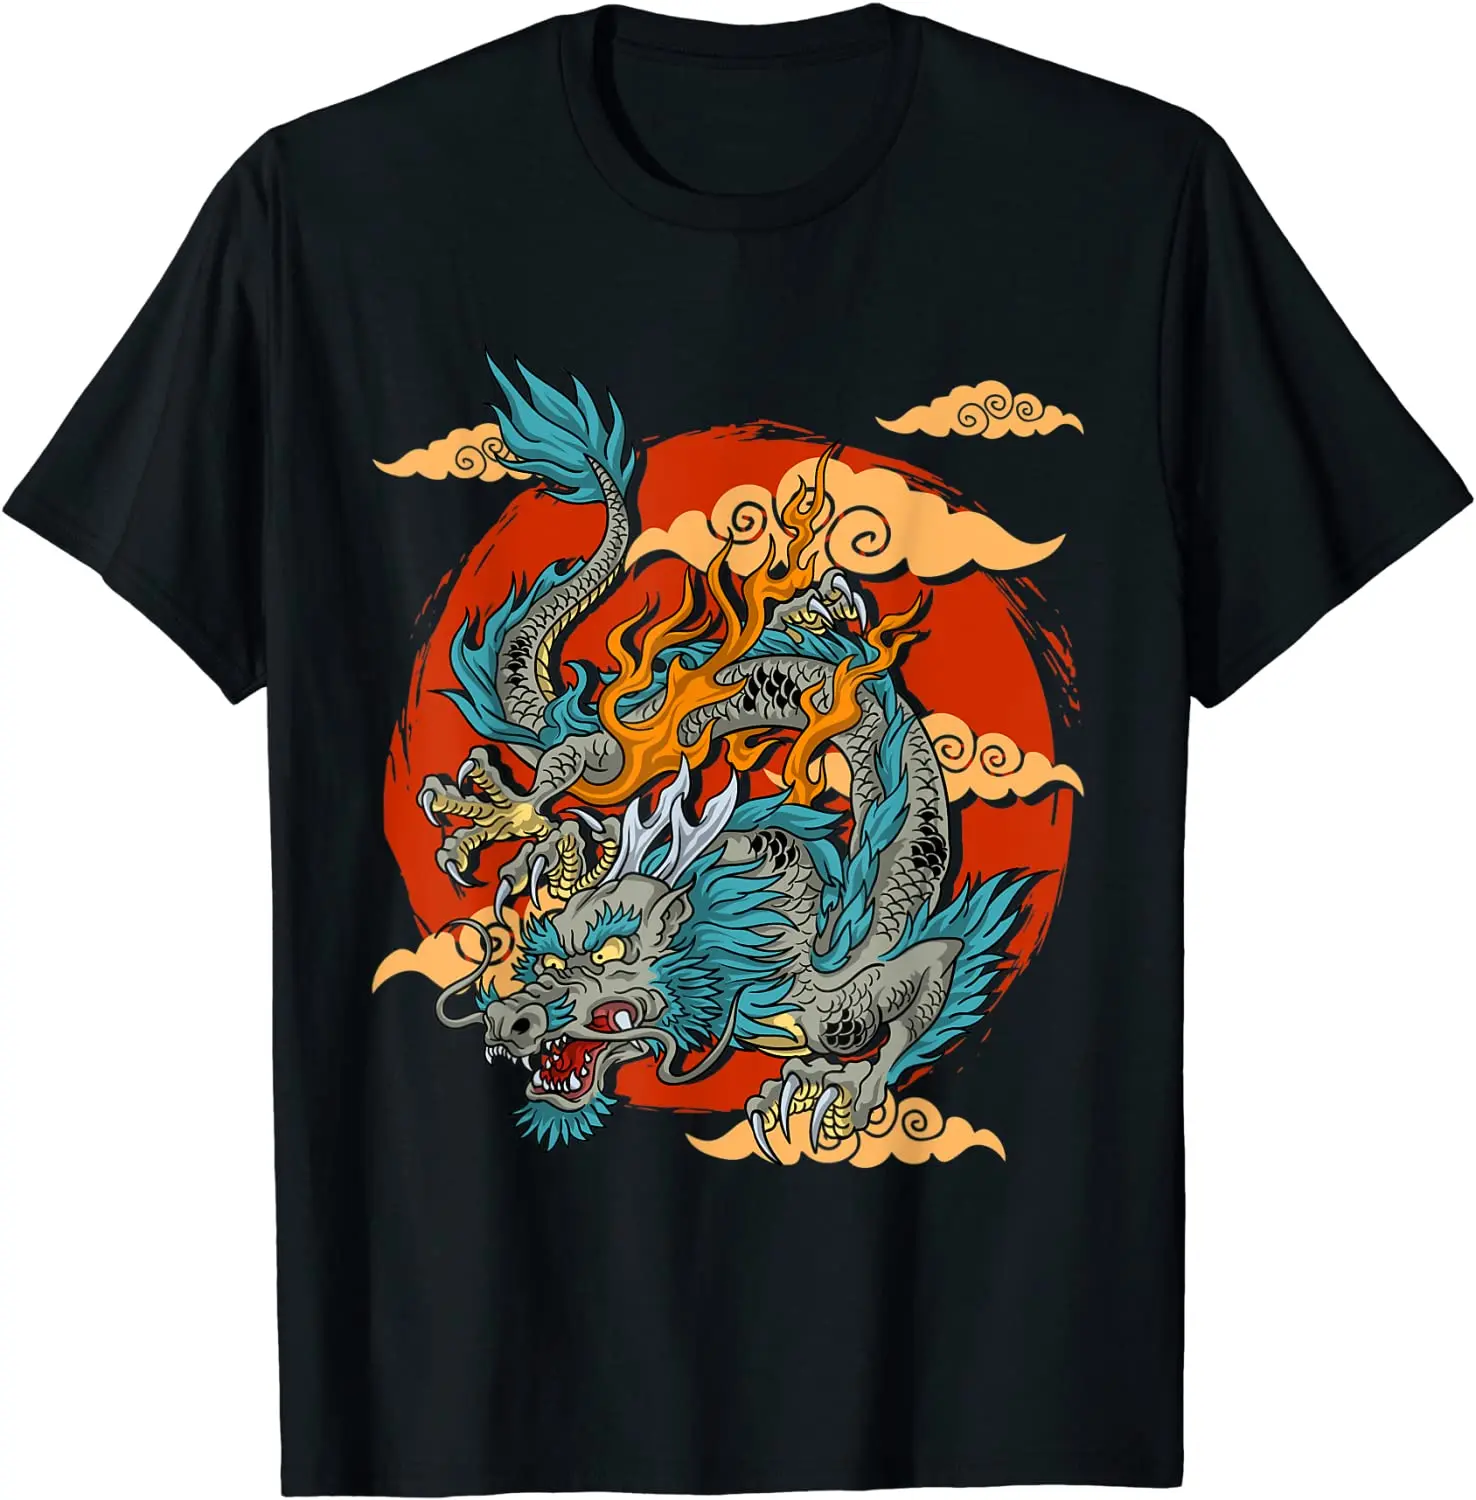 

Летняя Хлопковая мужская футболка с японским драконом Kanji | Винтажная футболка в стиле ретро с японским искусством/художественным рисунком,...